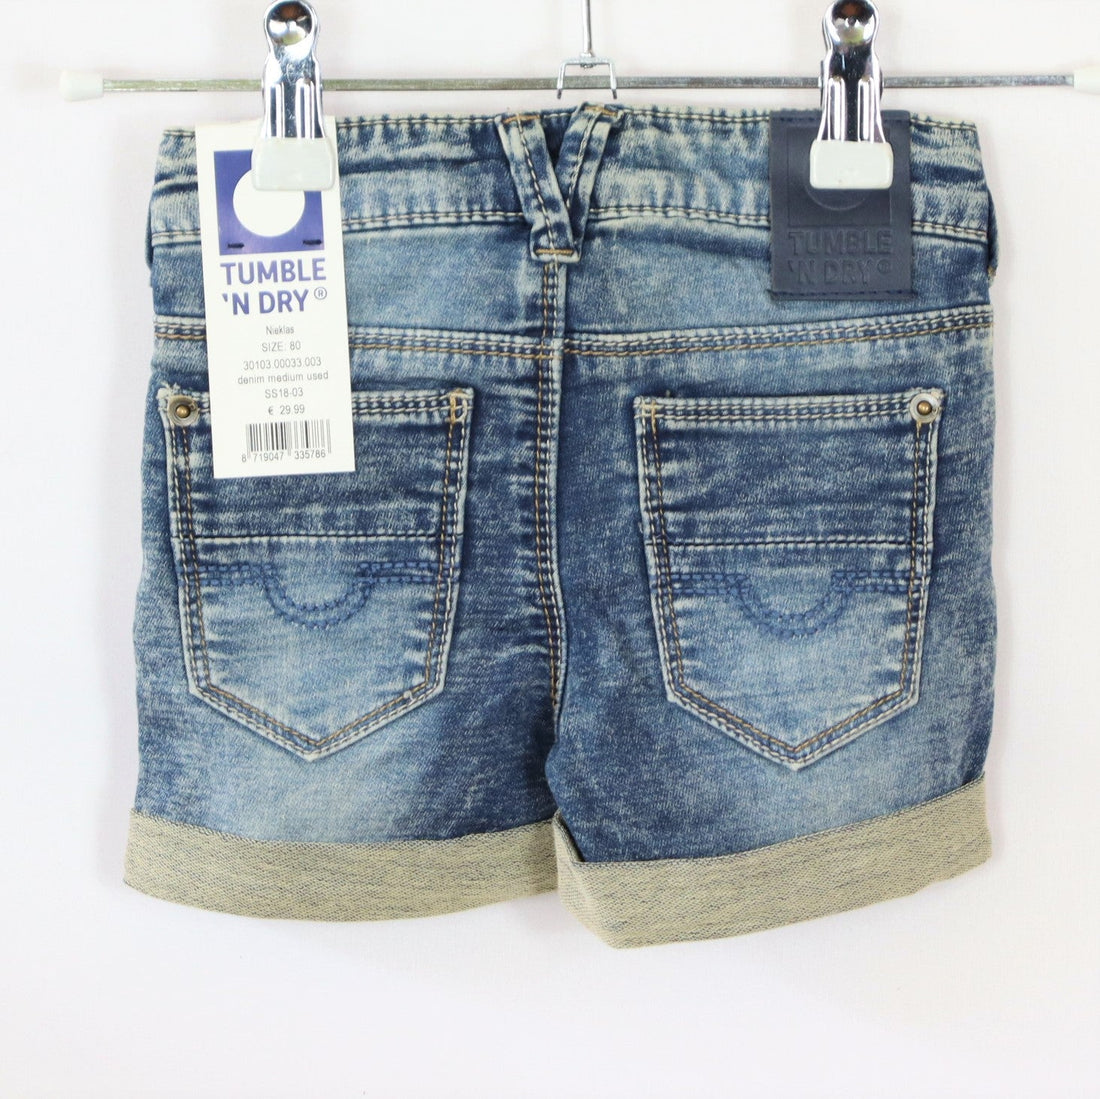 Hose - Tumble `N Dry - kurz - 80 - blau - Größen-verstellbar - Jeans - Girl - sehr guter Zustand